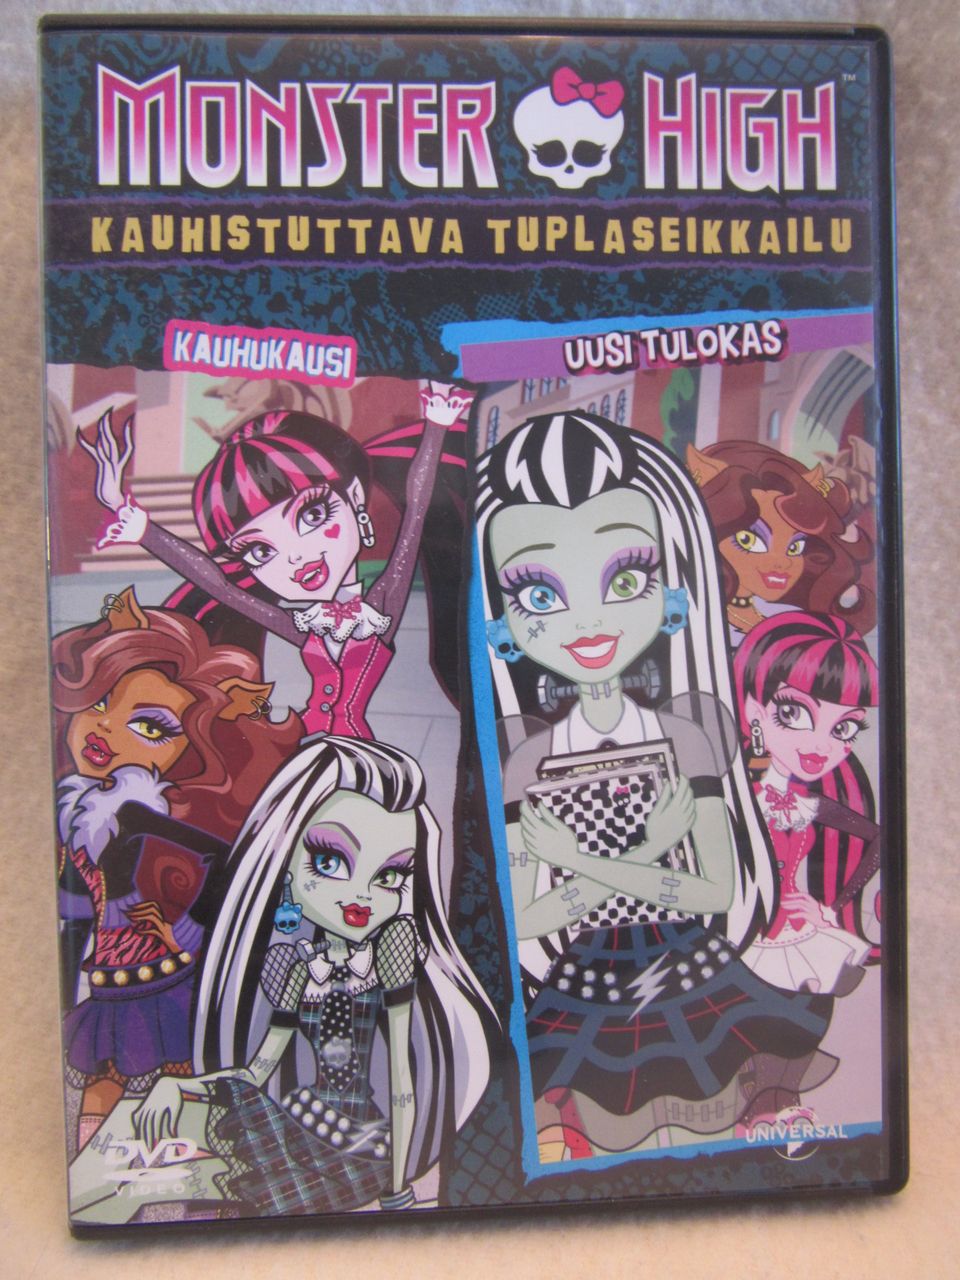 Monster High kauhistuttava tuplaseikkailu dvd